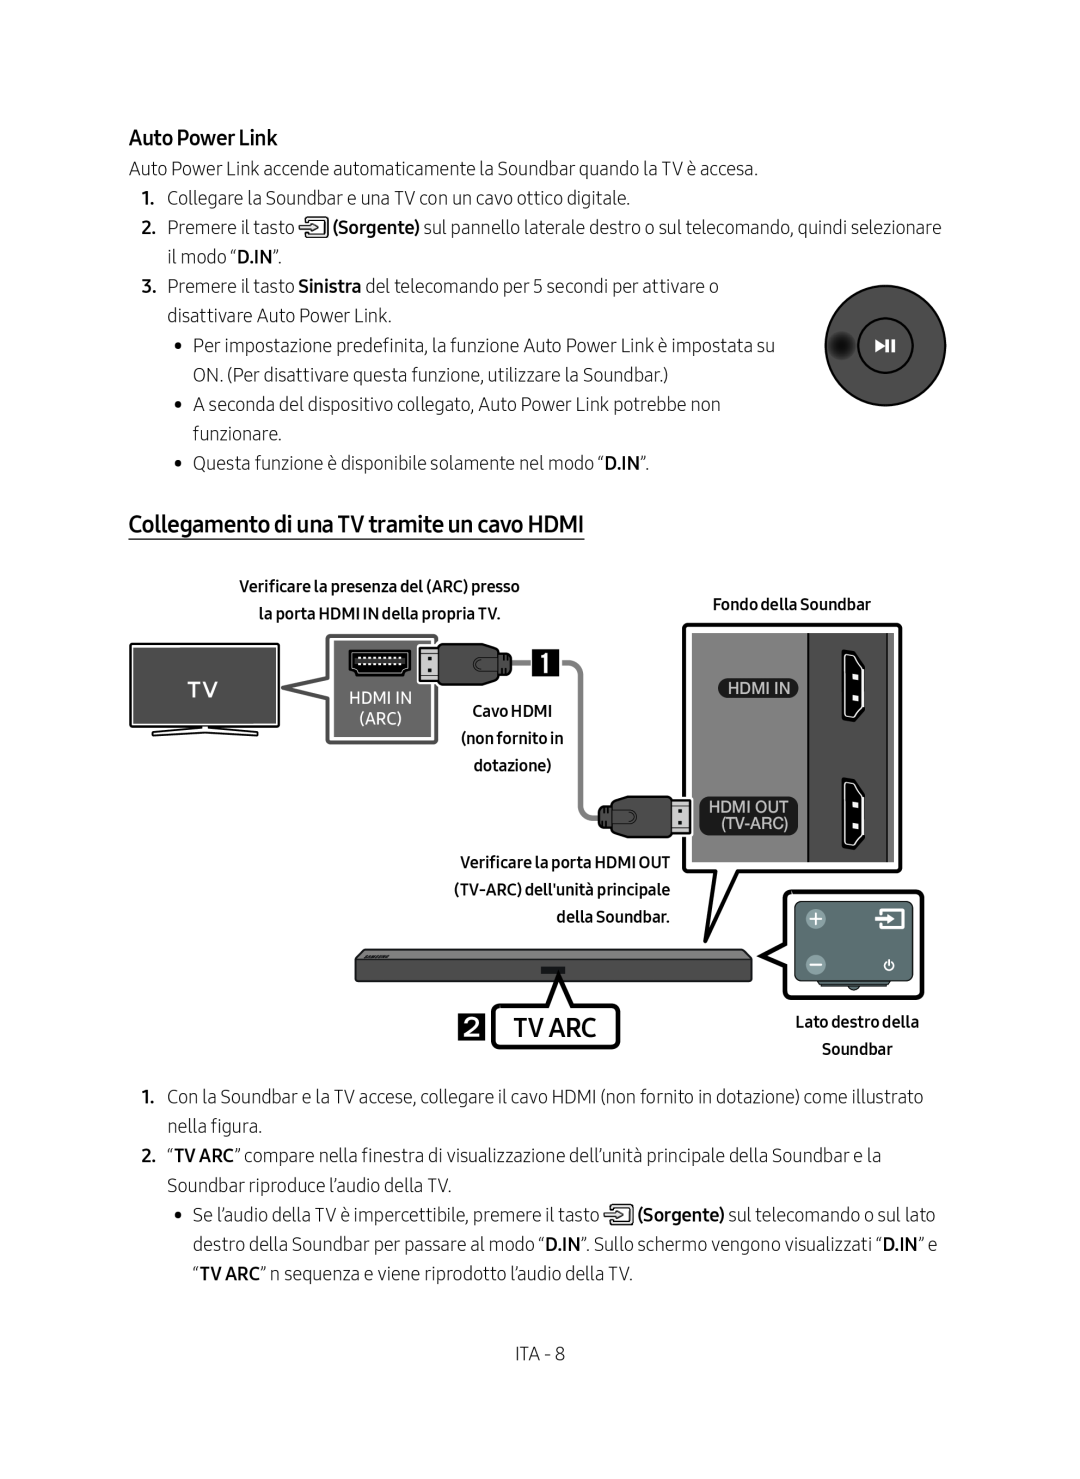 Samsung HW-M450/ZF Collegamento di una TV tramite un cavo HDMI,  Tv Arc, Auto Power Link, Fondo della Soundbar, Cavo HDMI 